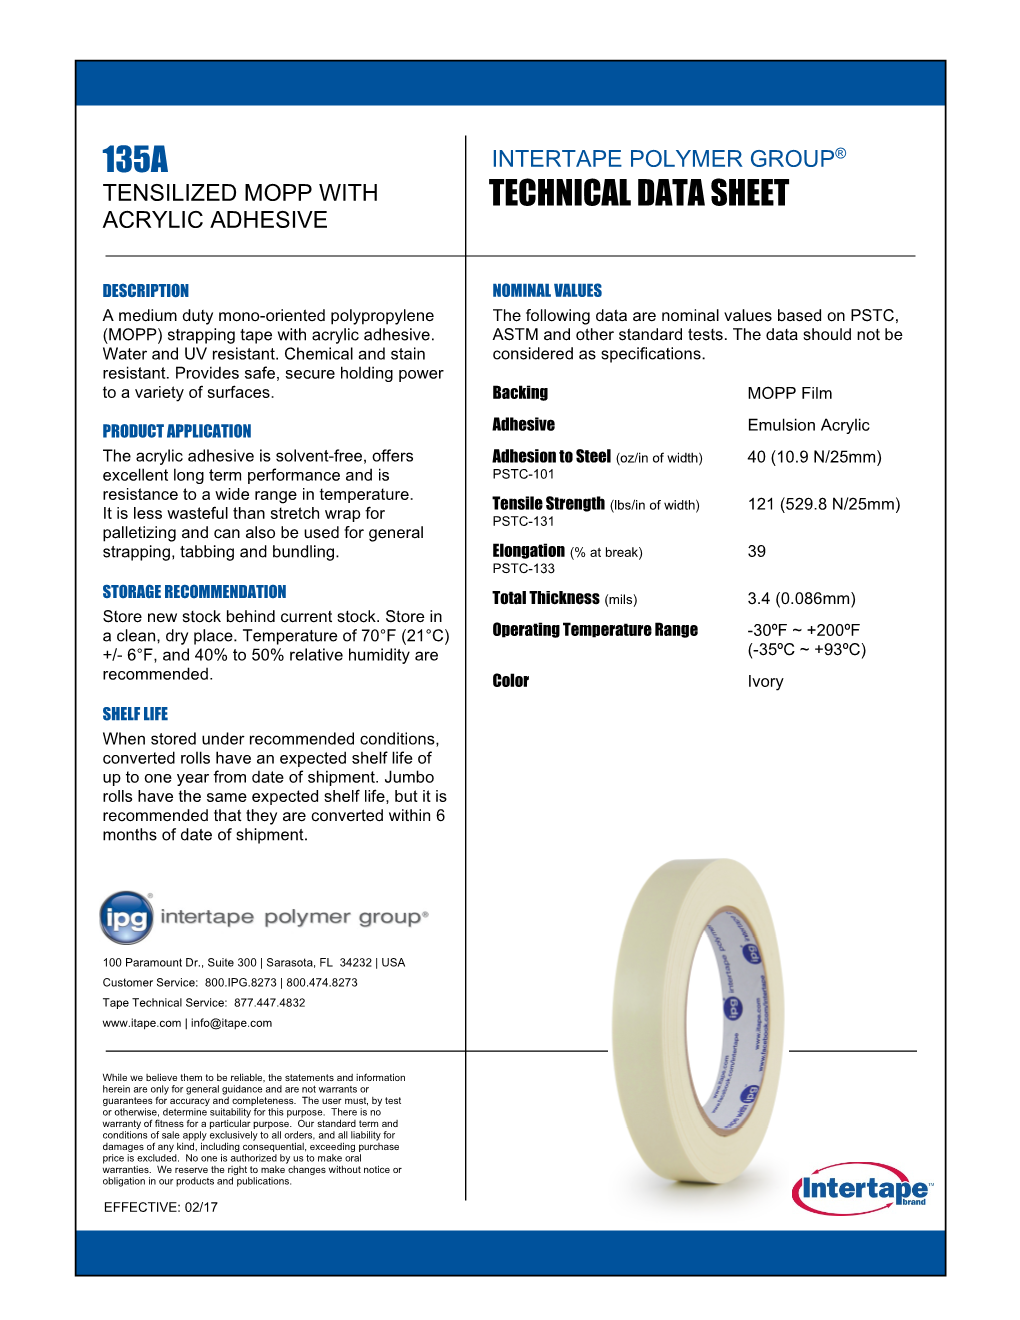 Technical Data Sheet 135A